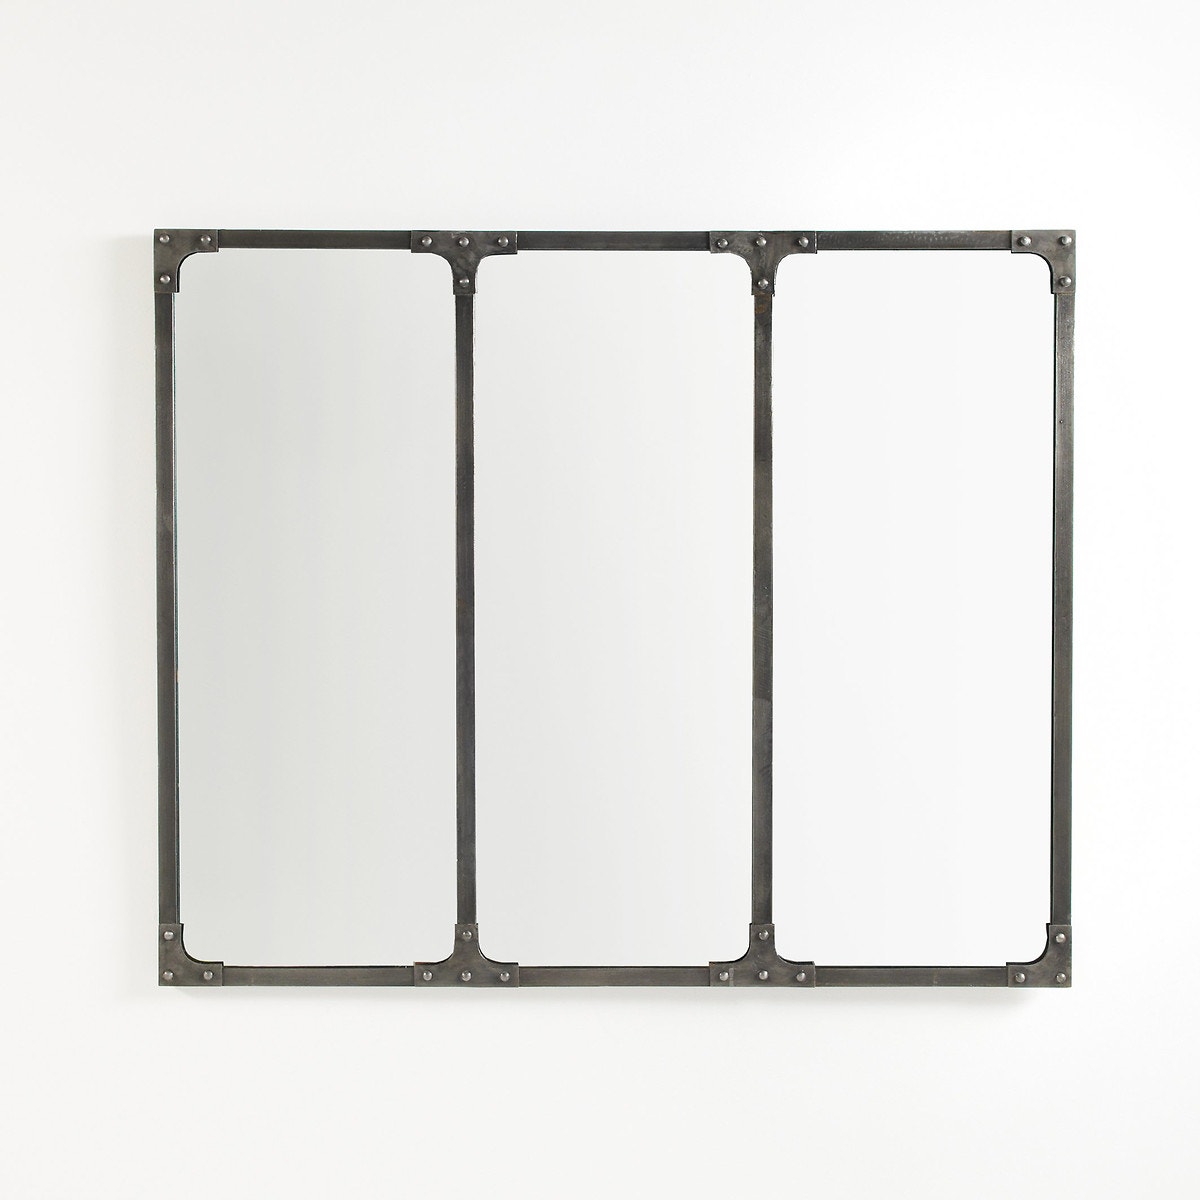 Μεταλλικός καθρέφτης βιομηχανικού στυλ 120x100 εκ., Lenaig